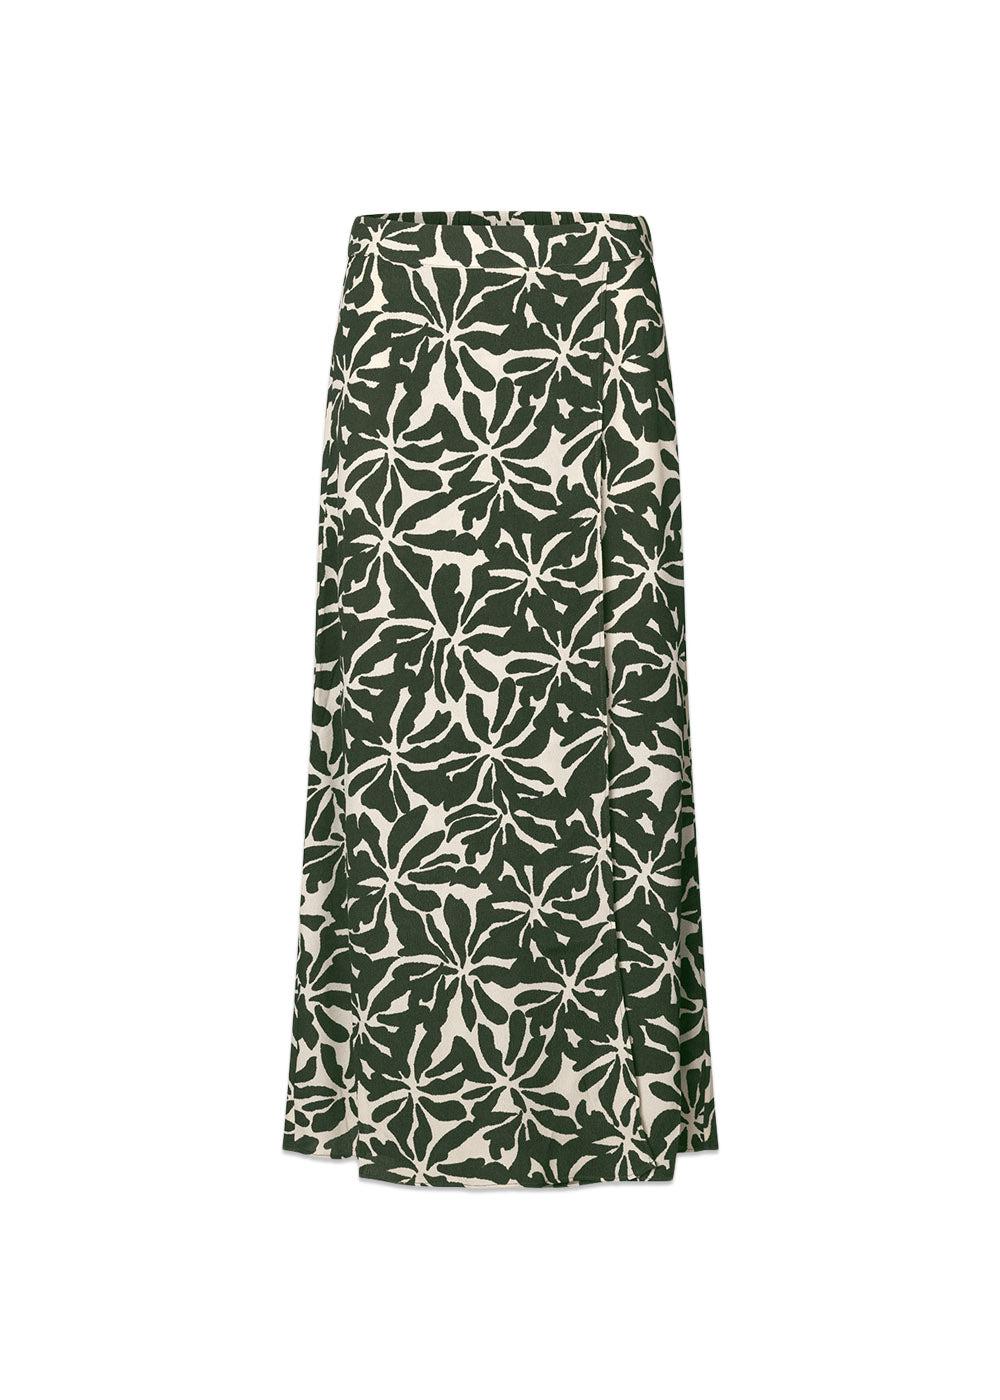 Modströms FernMD print skirt - Ocean Fleur. Køb skirts her.